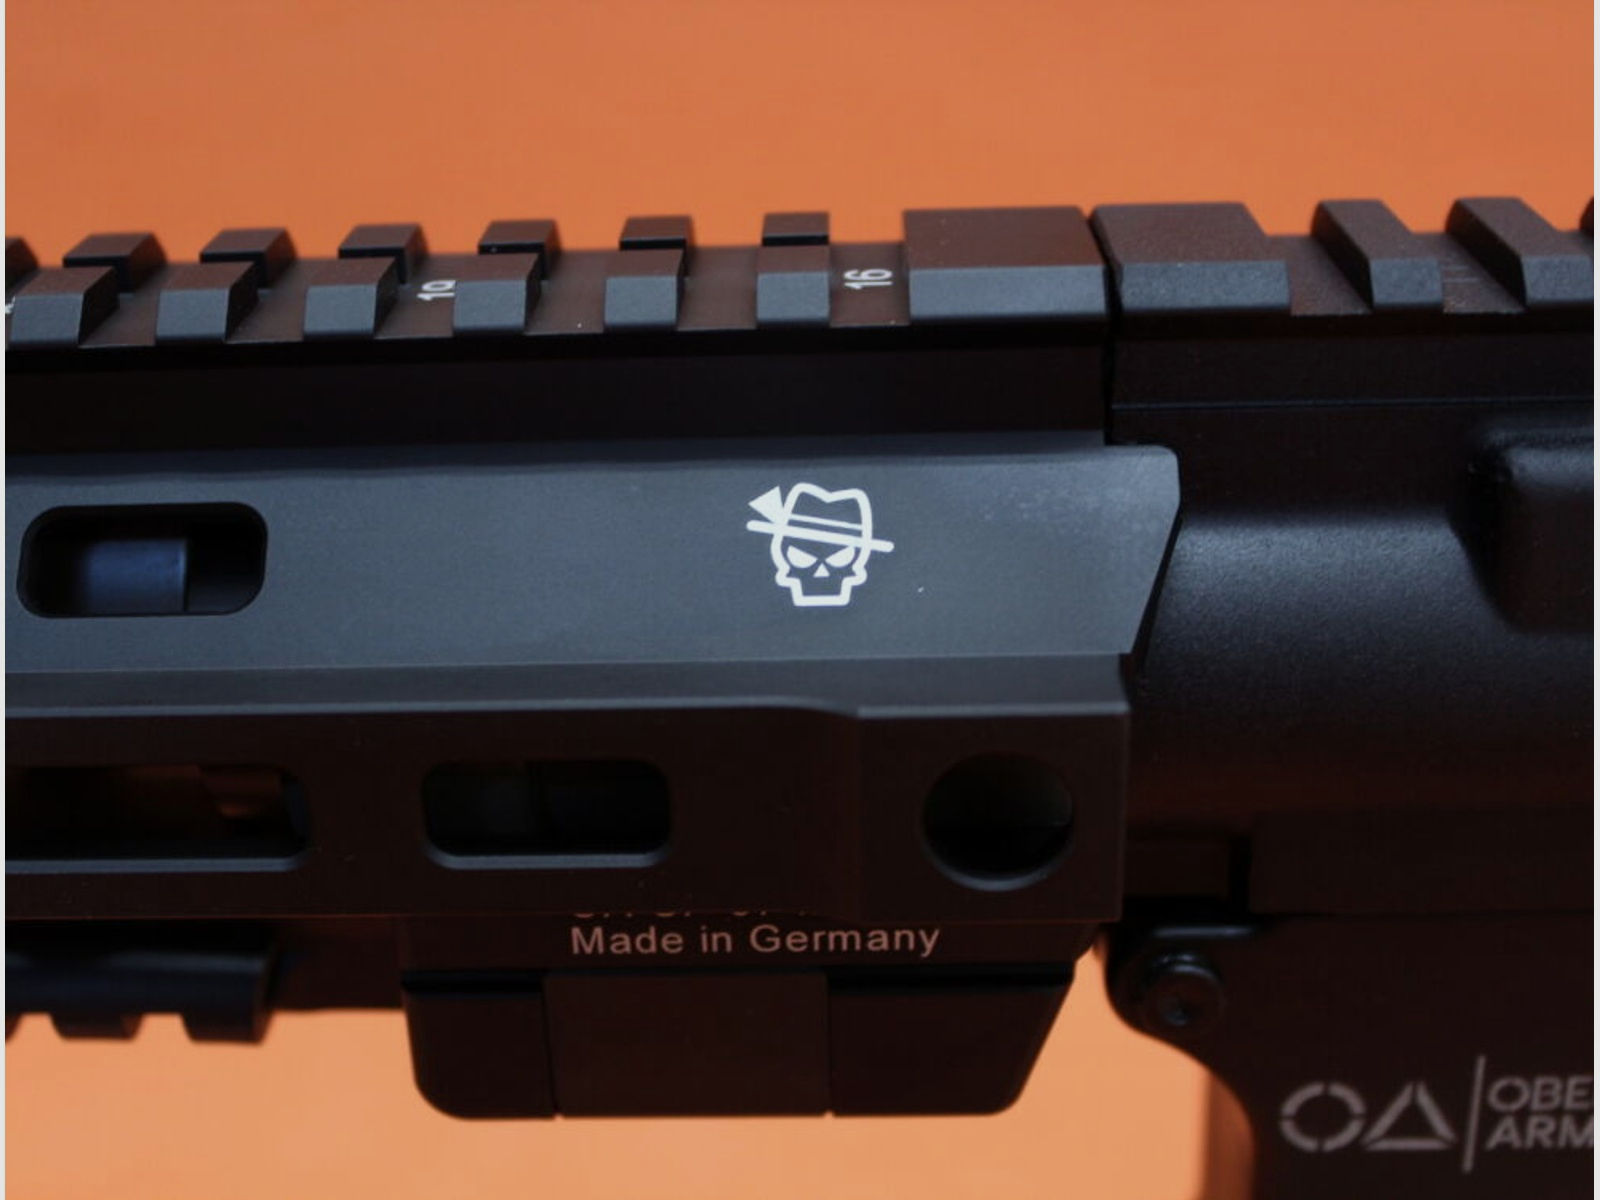 Oberland Arms	 Ha.Büchse .300AAC Blackout Oberland Arms OA-15 M10 System AR-15 10,7" Lauf/ M-LOK/ Schubschaft